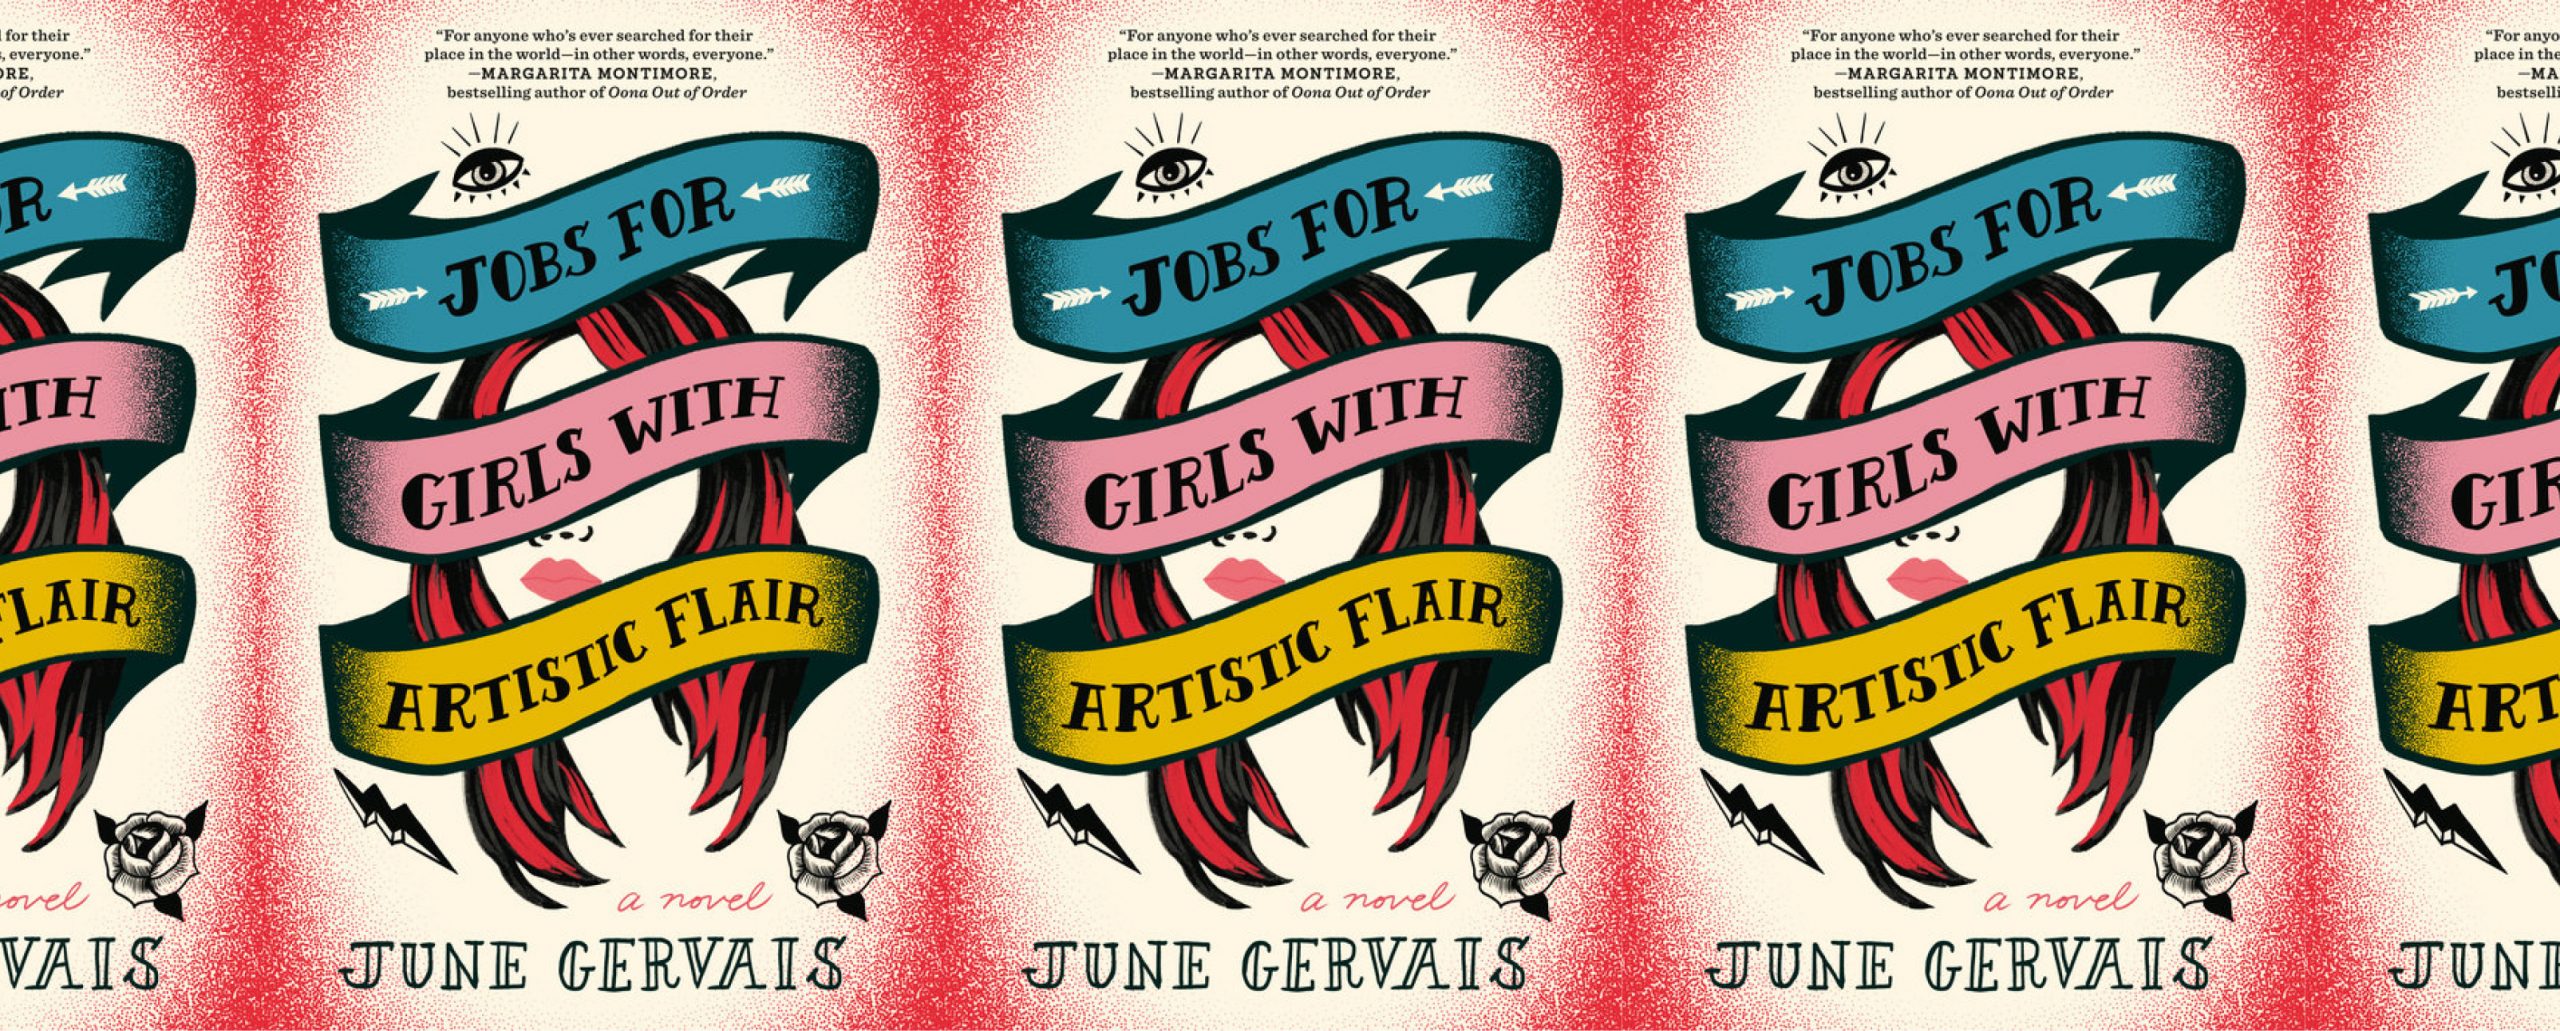 la portada del libro Jobs for Girls with Artistic Flair, con el título estilizado como un tatuaje sobre el tatuaje de la cara de una mujer